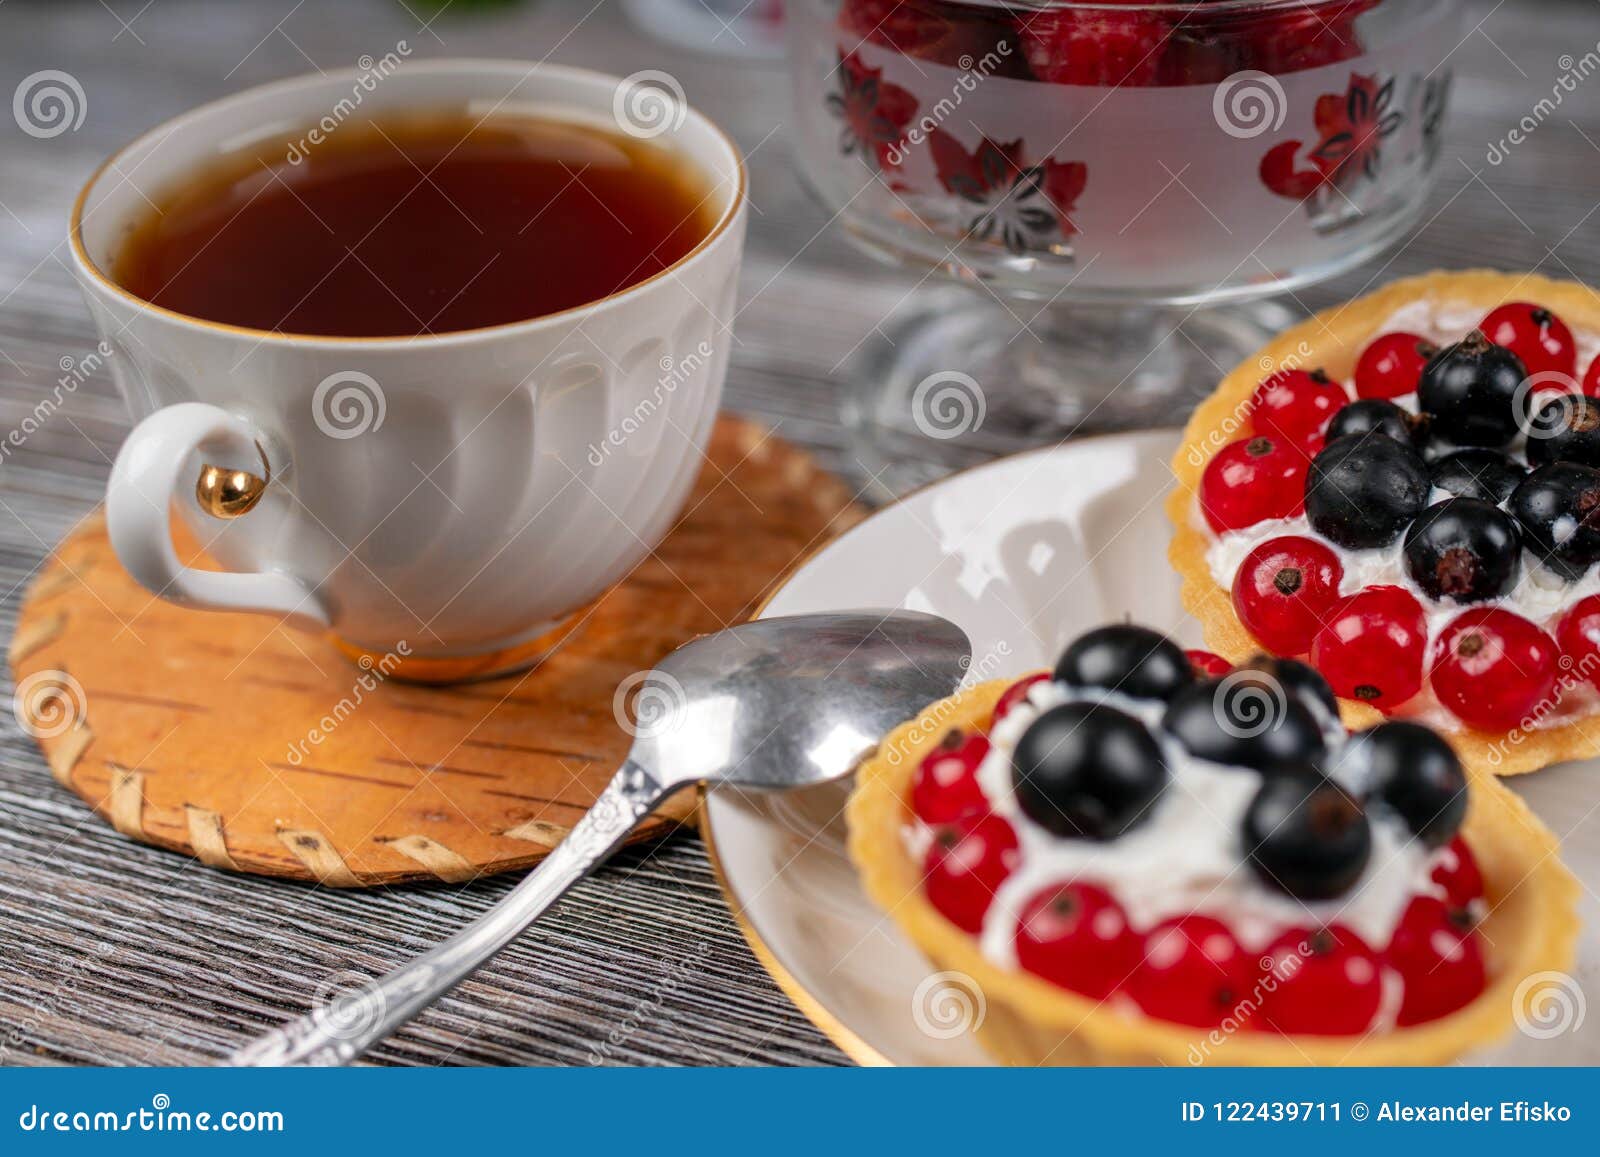 Tasse Tee und Körbe mit Sahne und Korinthe. Schwarzweiss-Stämme von Birken auf dem Hintergrund von grünen Blättern